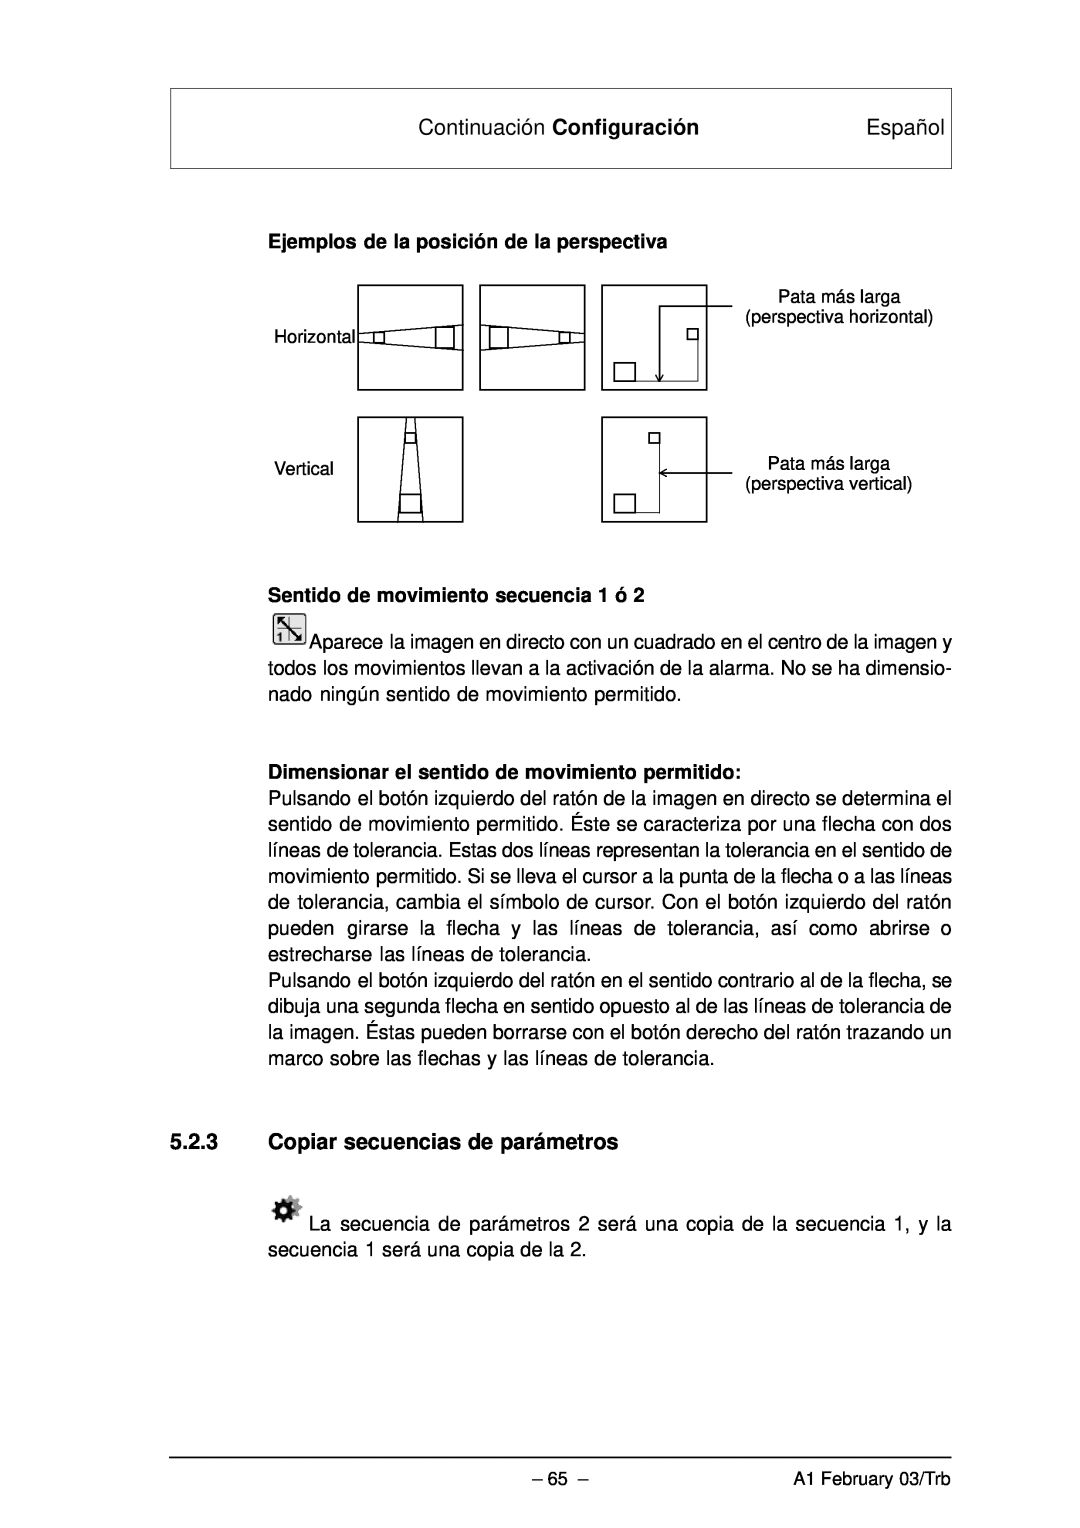 Bosch Appliances VMD01 M50 PAL manual Continuación Configuración, Español, Ejemplos de la posición de la perspectiva 